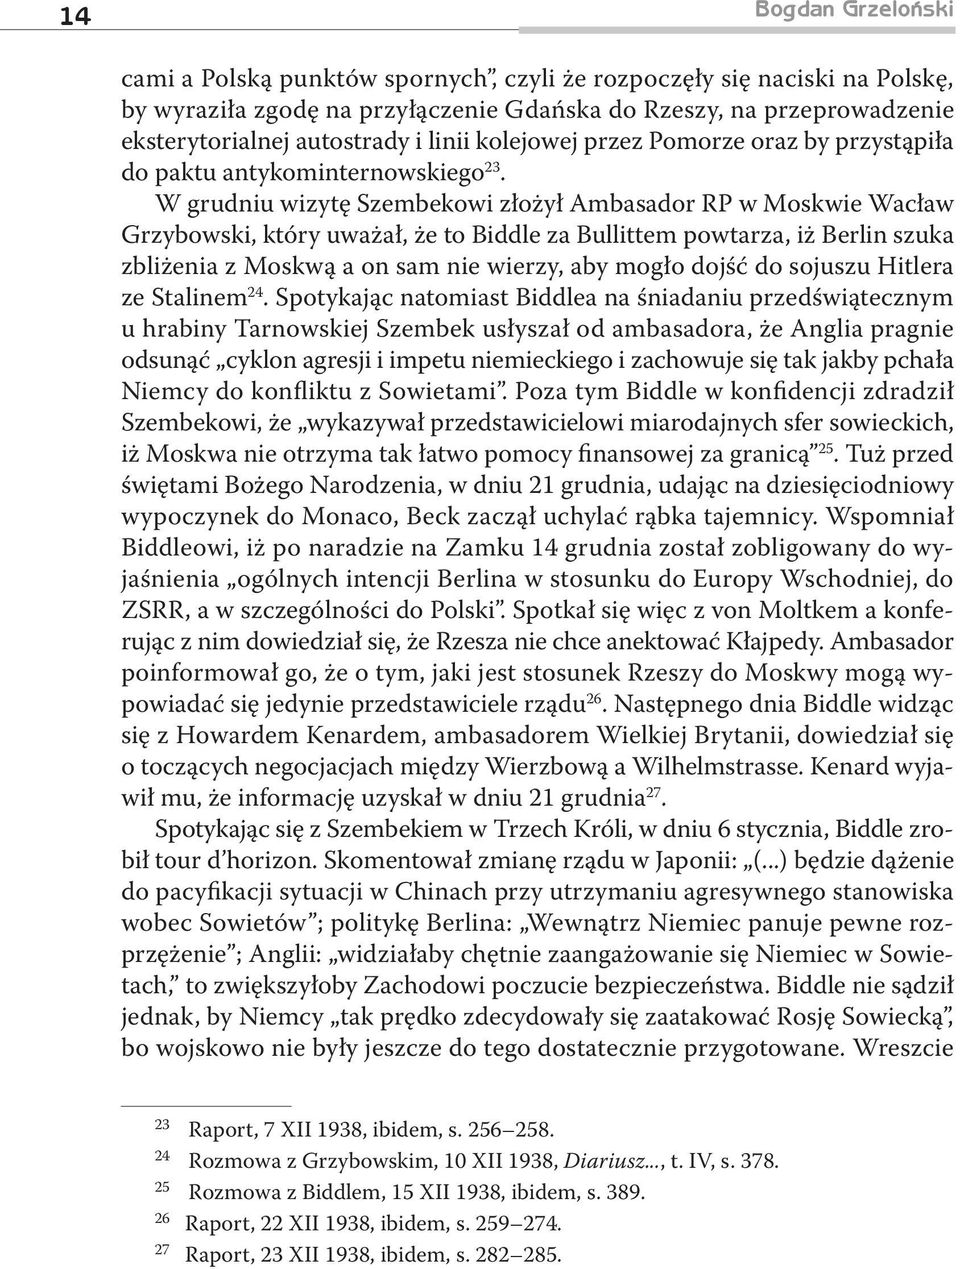 W grudniu wizytę Szembekowi złożył Ambasador RP w Moskwie Wacław Grzybowski, który uważał, że to Biddle za Bullittem powtarza, iż Berlin szuka zbliżenia z Moskwą a on sam nie wierzy, aby mogło dojść